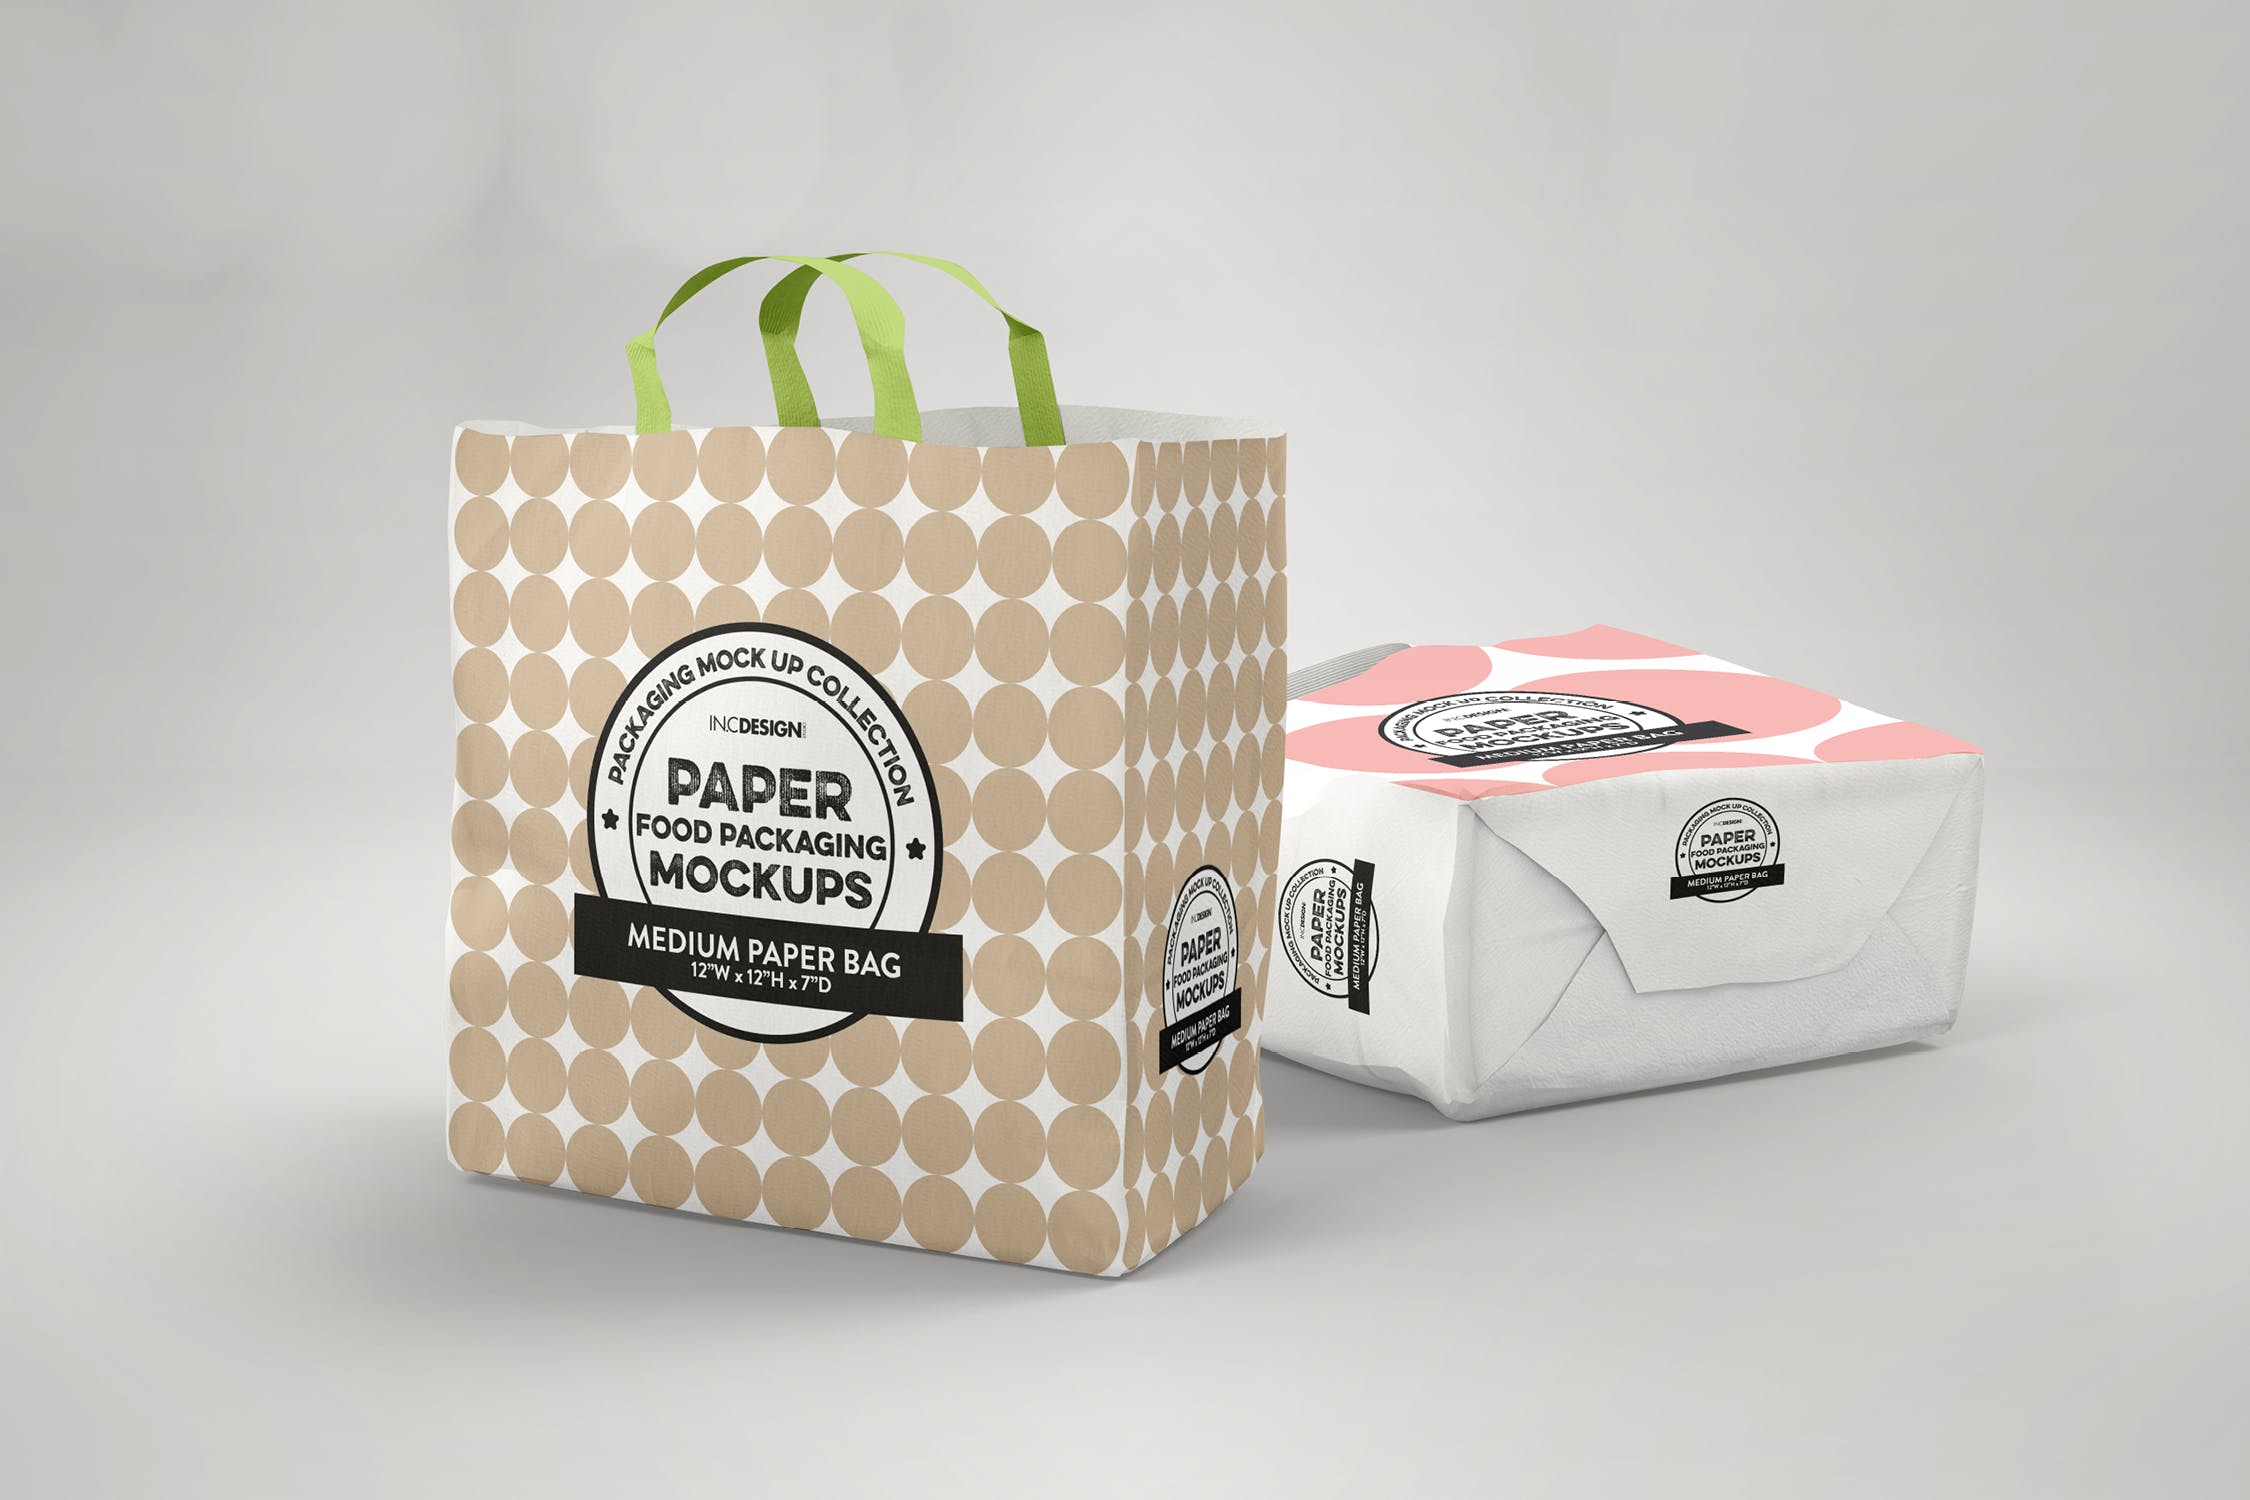 中型纸袋包装设计效果图第一素材精选 Medium Paper Bags Packaging Mockup插图(1)